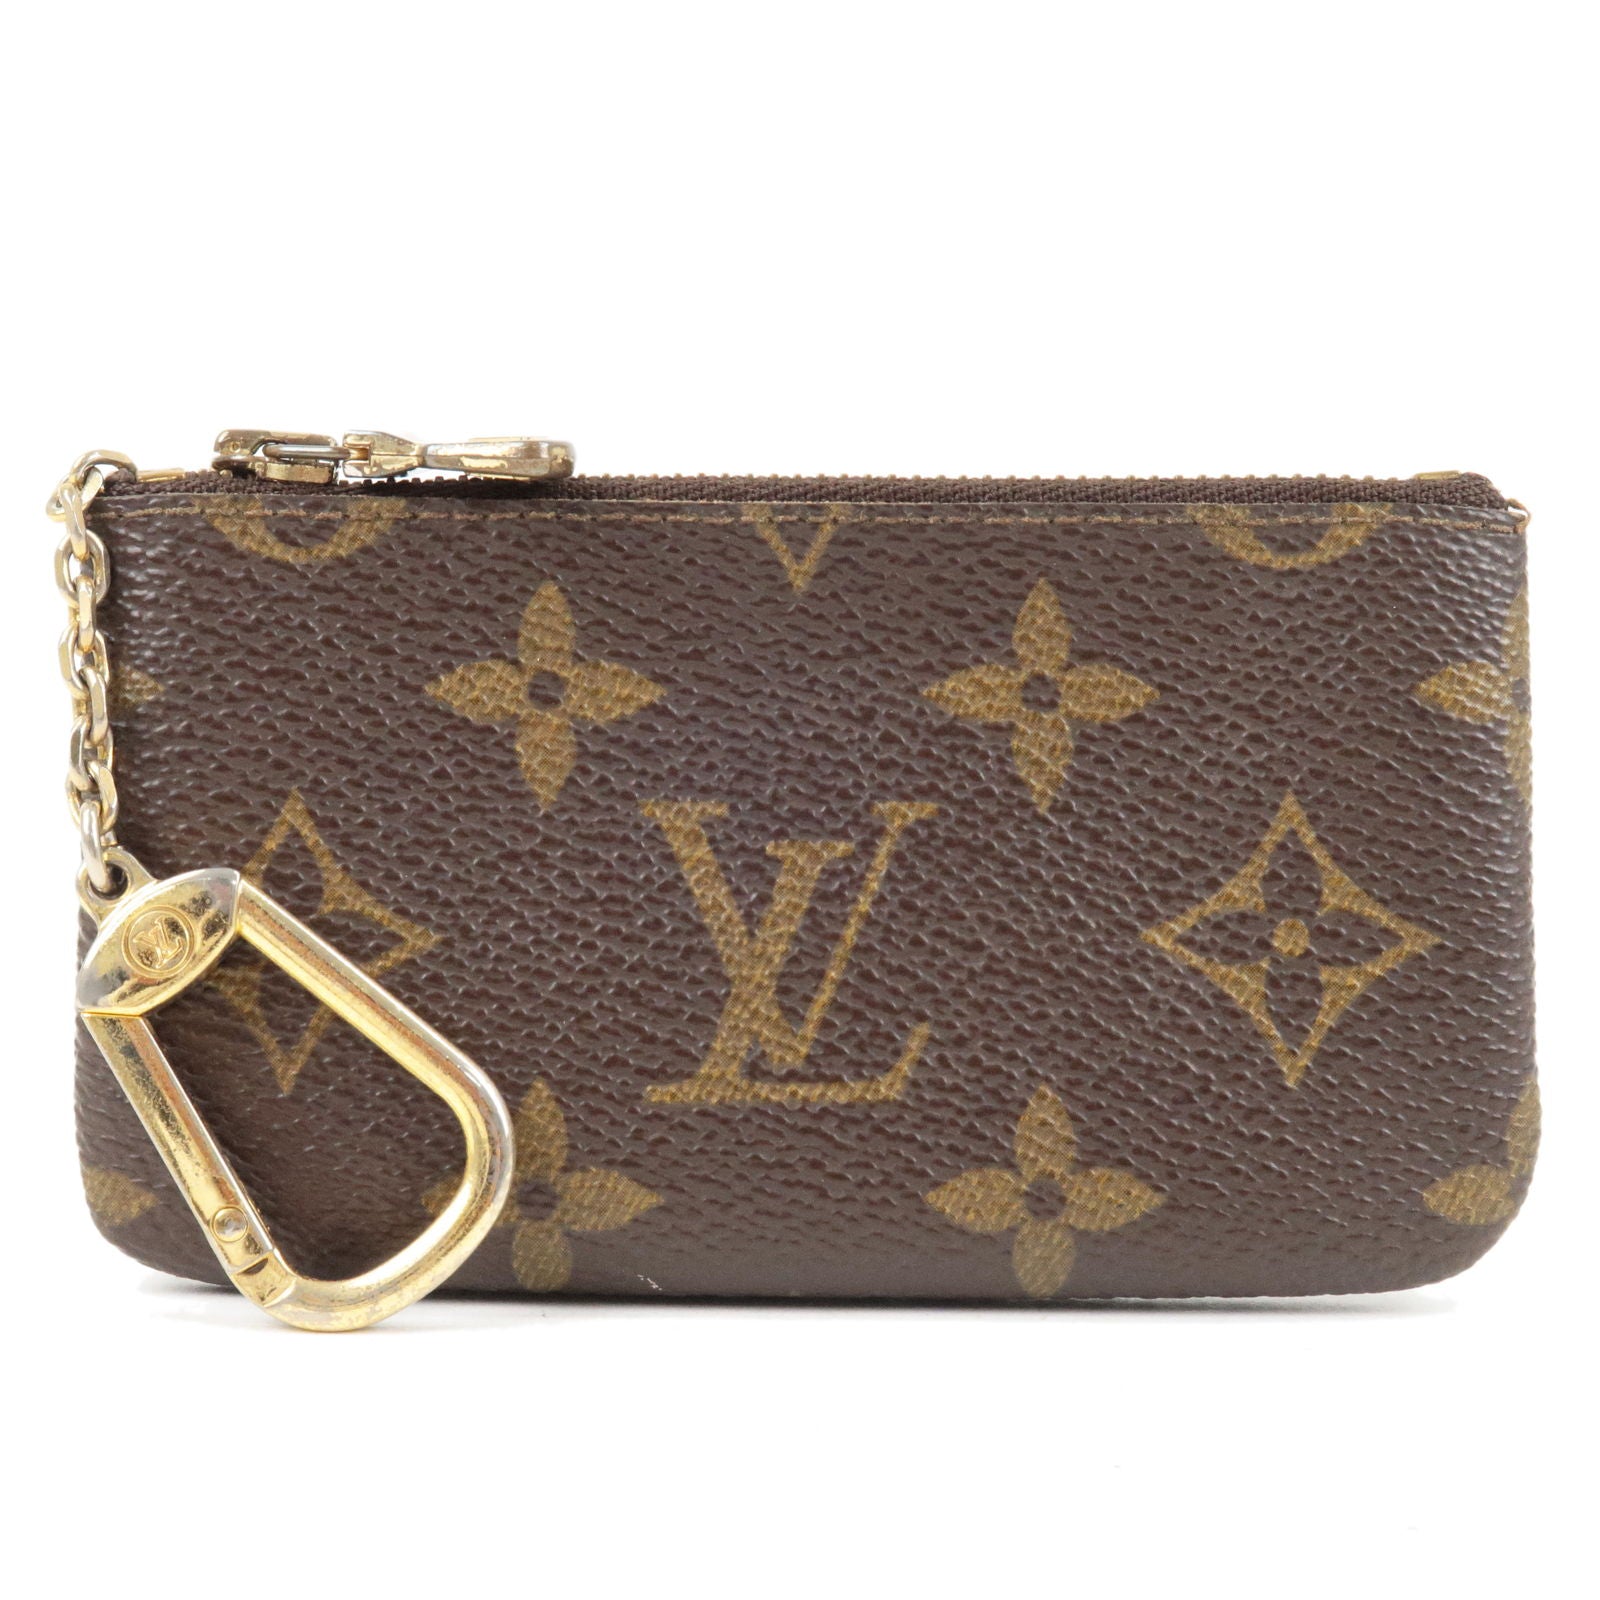 Cles - ep_vintage muchness Store - Pochette - Monogram - Louis - M62650 –  dct - Case - Vuitton - Key - Coin - Louis Vuitton 2006 pre-owned Damier  Ebène Knightsbridge handbag Brown - Case